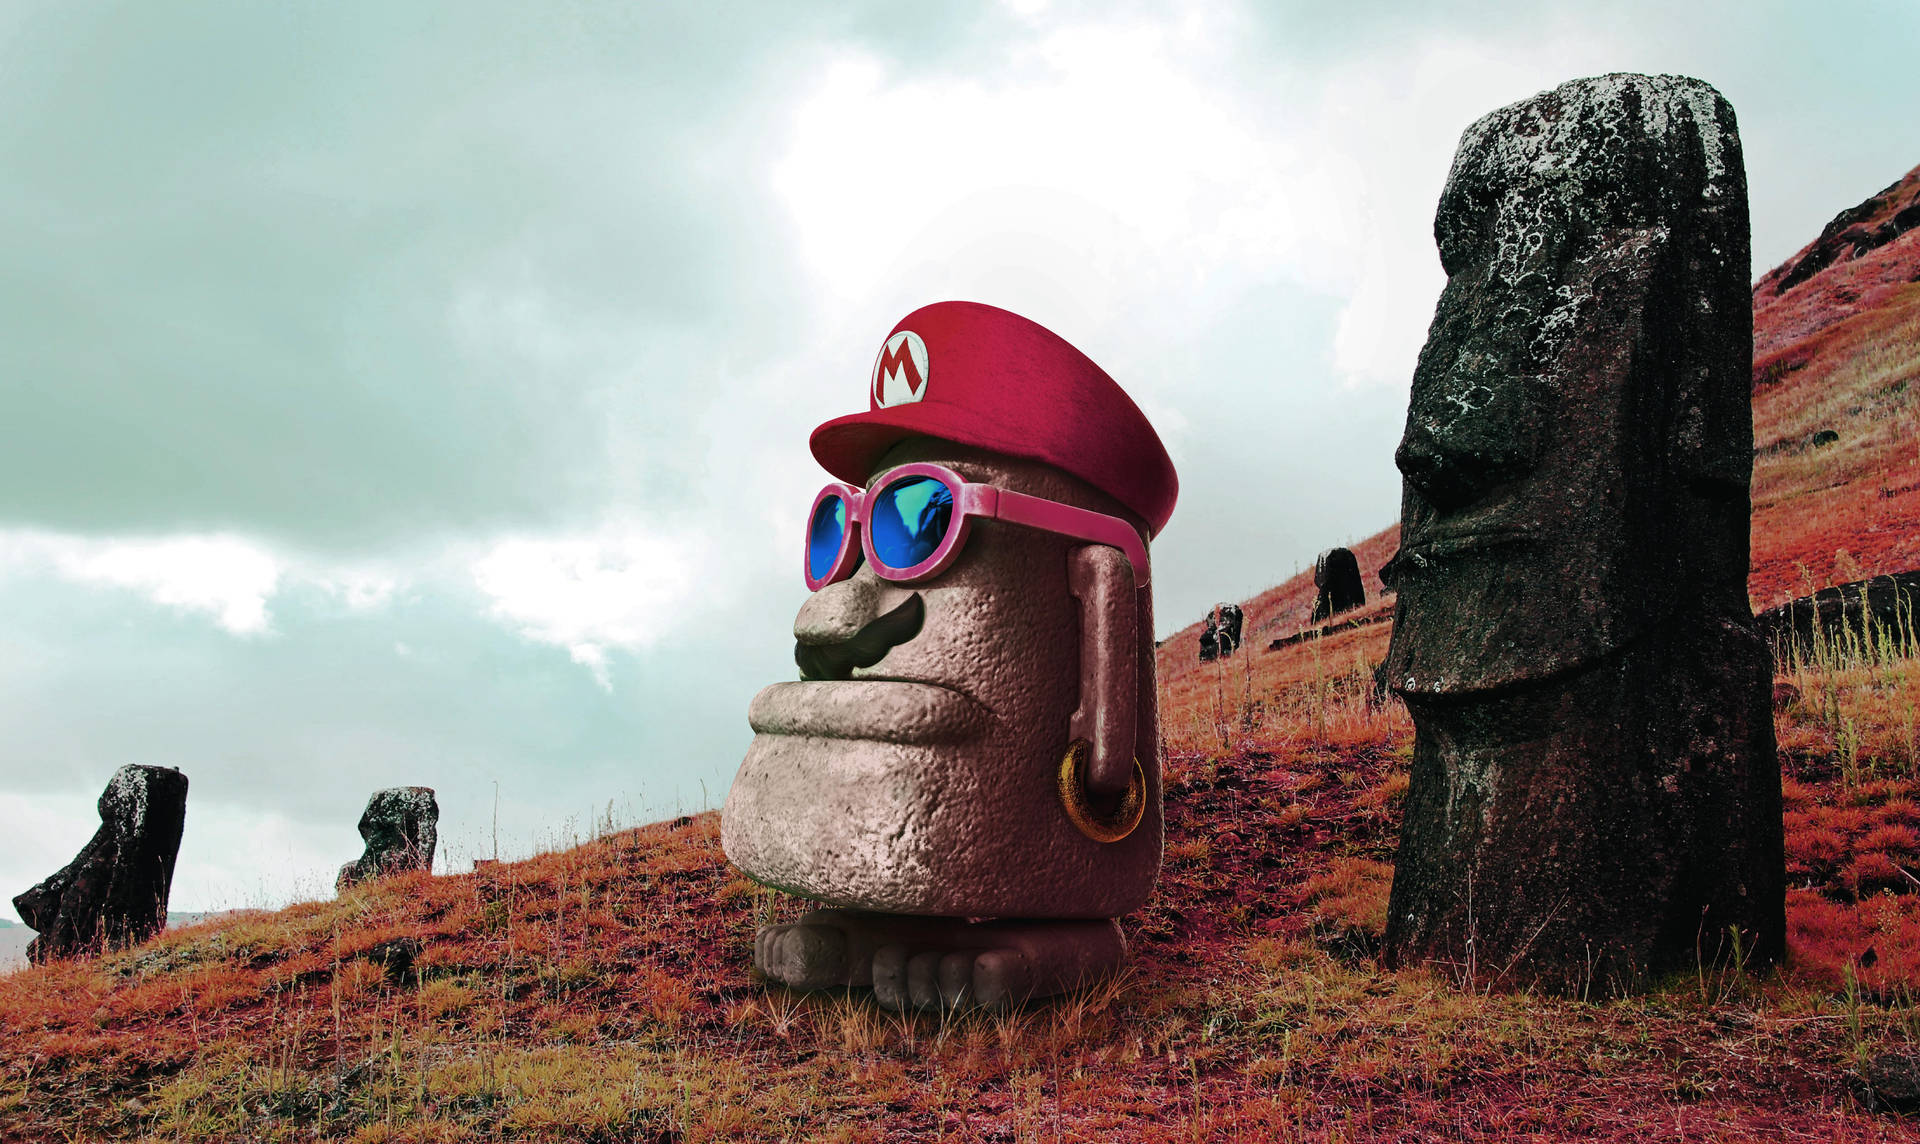 Super Mario Odyssey Adventure - Moai Statues Scene